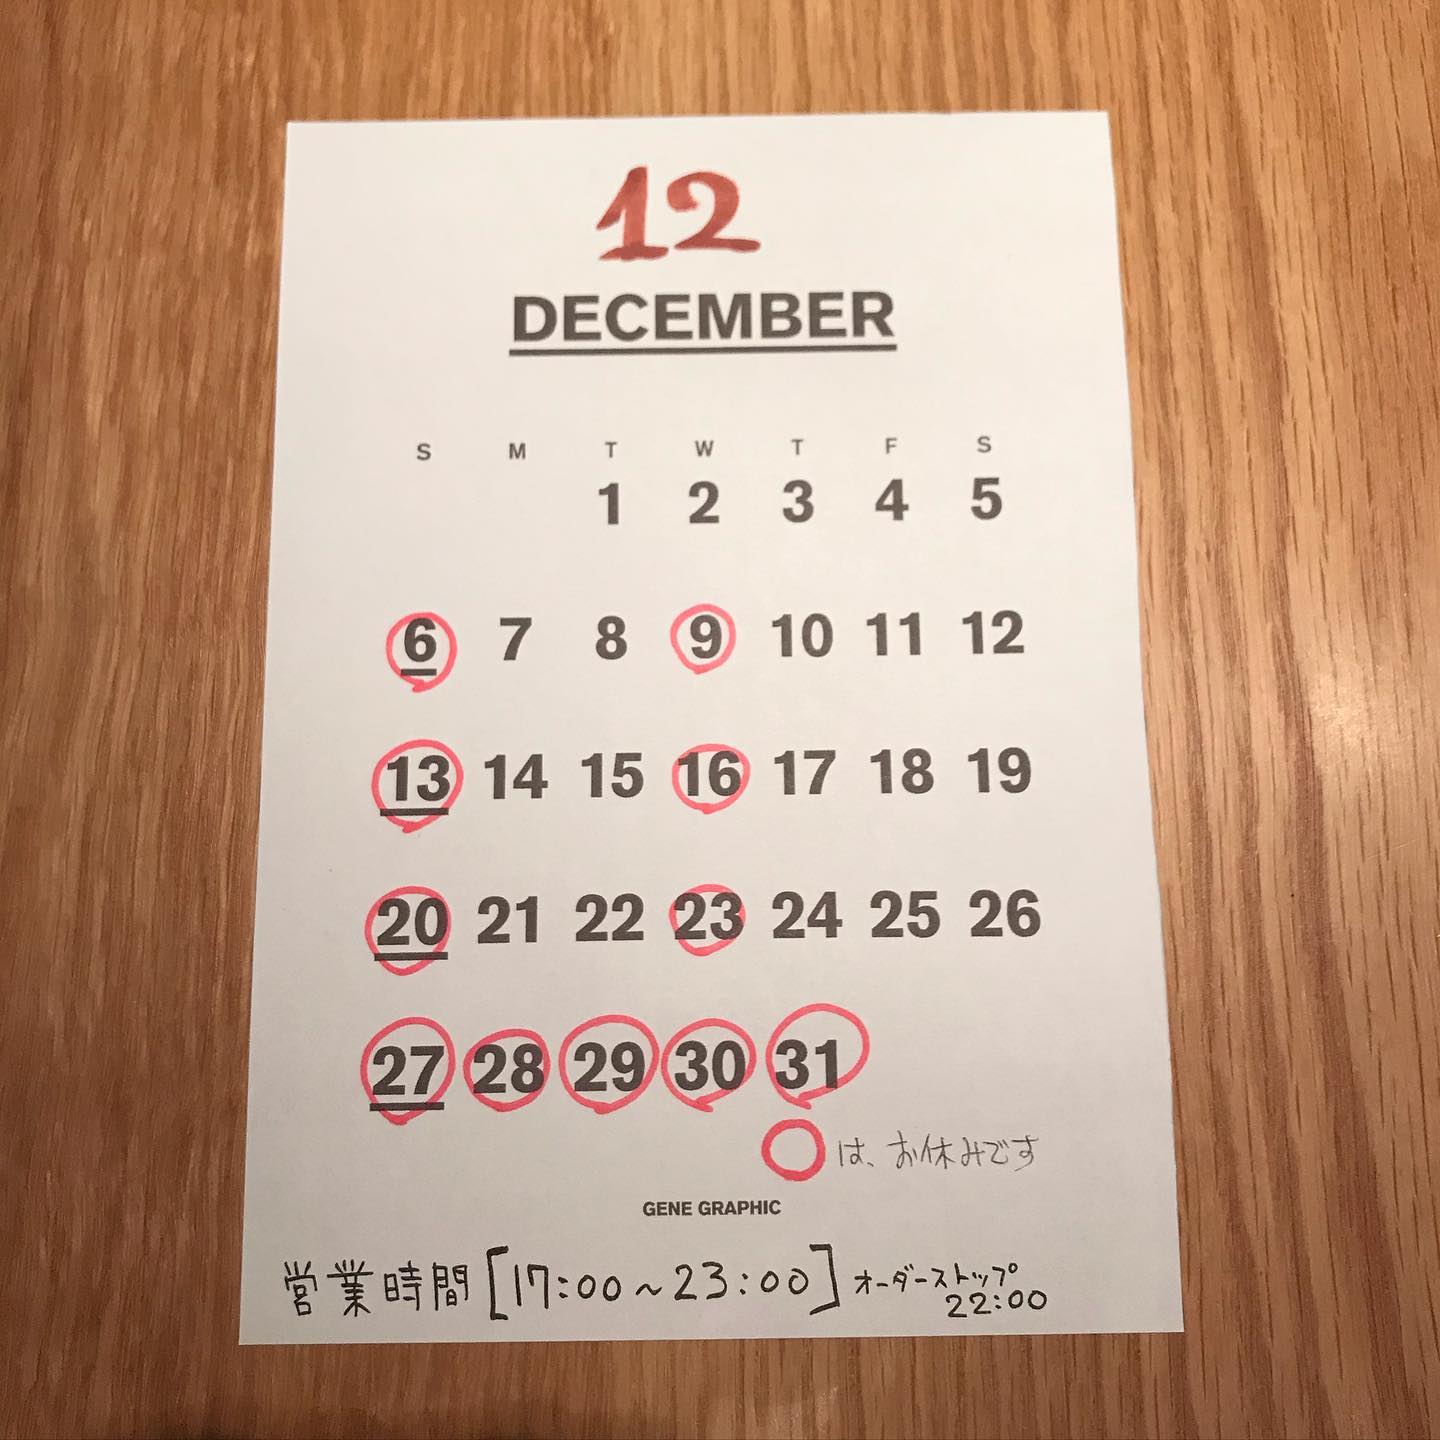 早くも12月。12月の店休日6,9,13,16,20,23,27〜31日休みの予定です。年明けは5日から営業考えてます。12月もよろしくお願いします。#イルフェソワフ #ワイン#日本酒 #薬院#警固